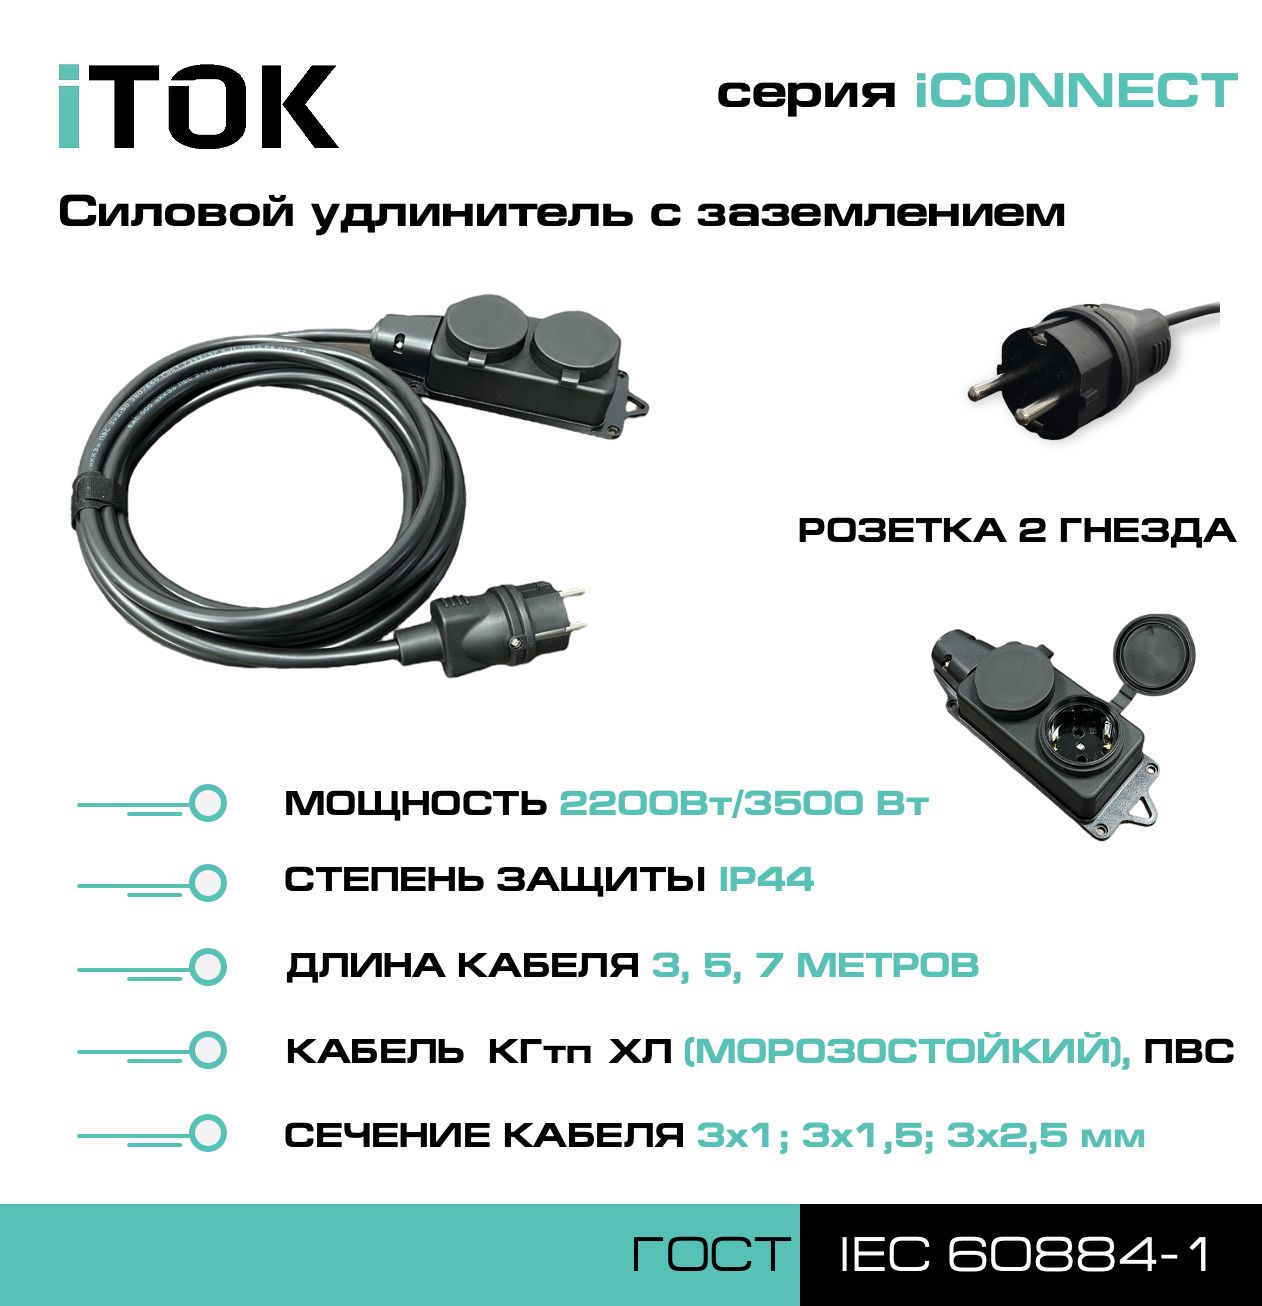 Удлинитель с заземлением серии iTOK iCONNECT ПВС 3х1,5 мм 2 гнезда IP44 3 м